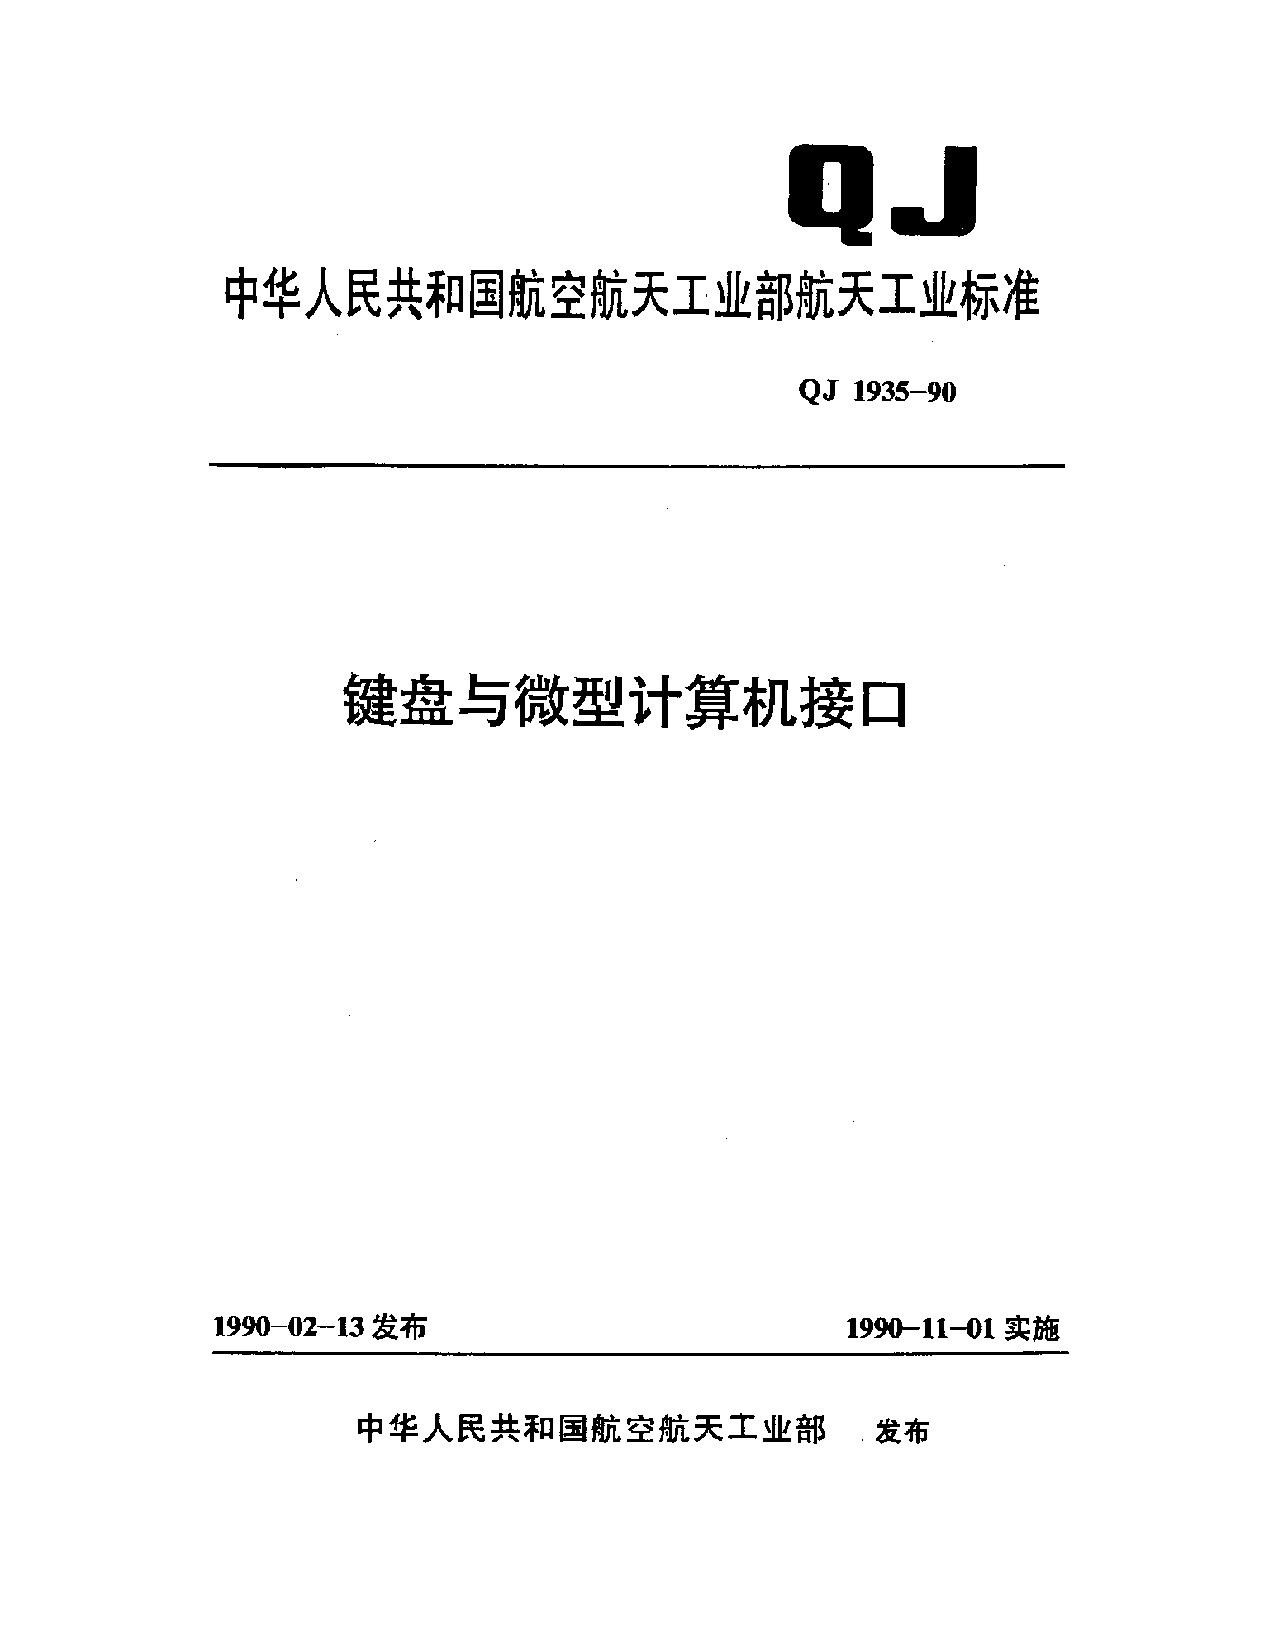 QJ 1935-1990封面图